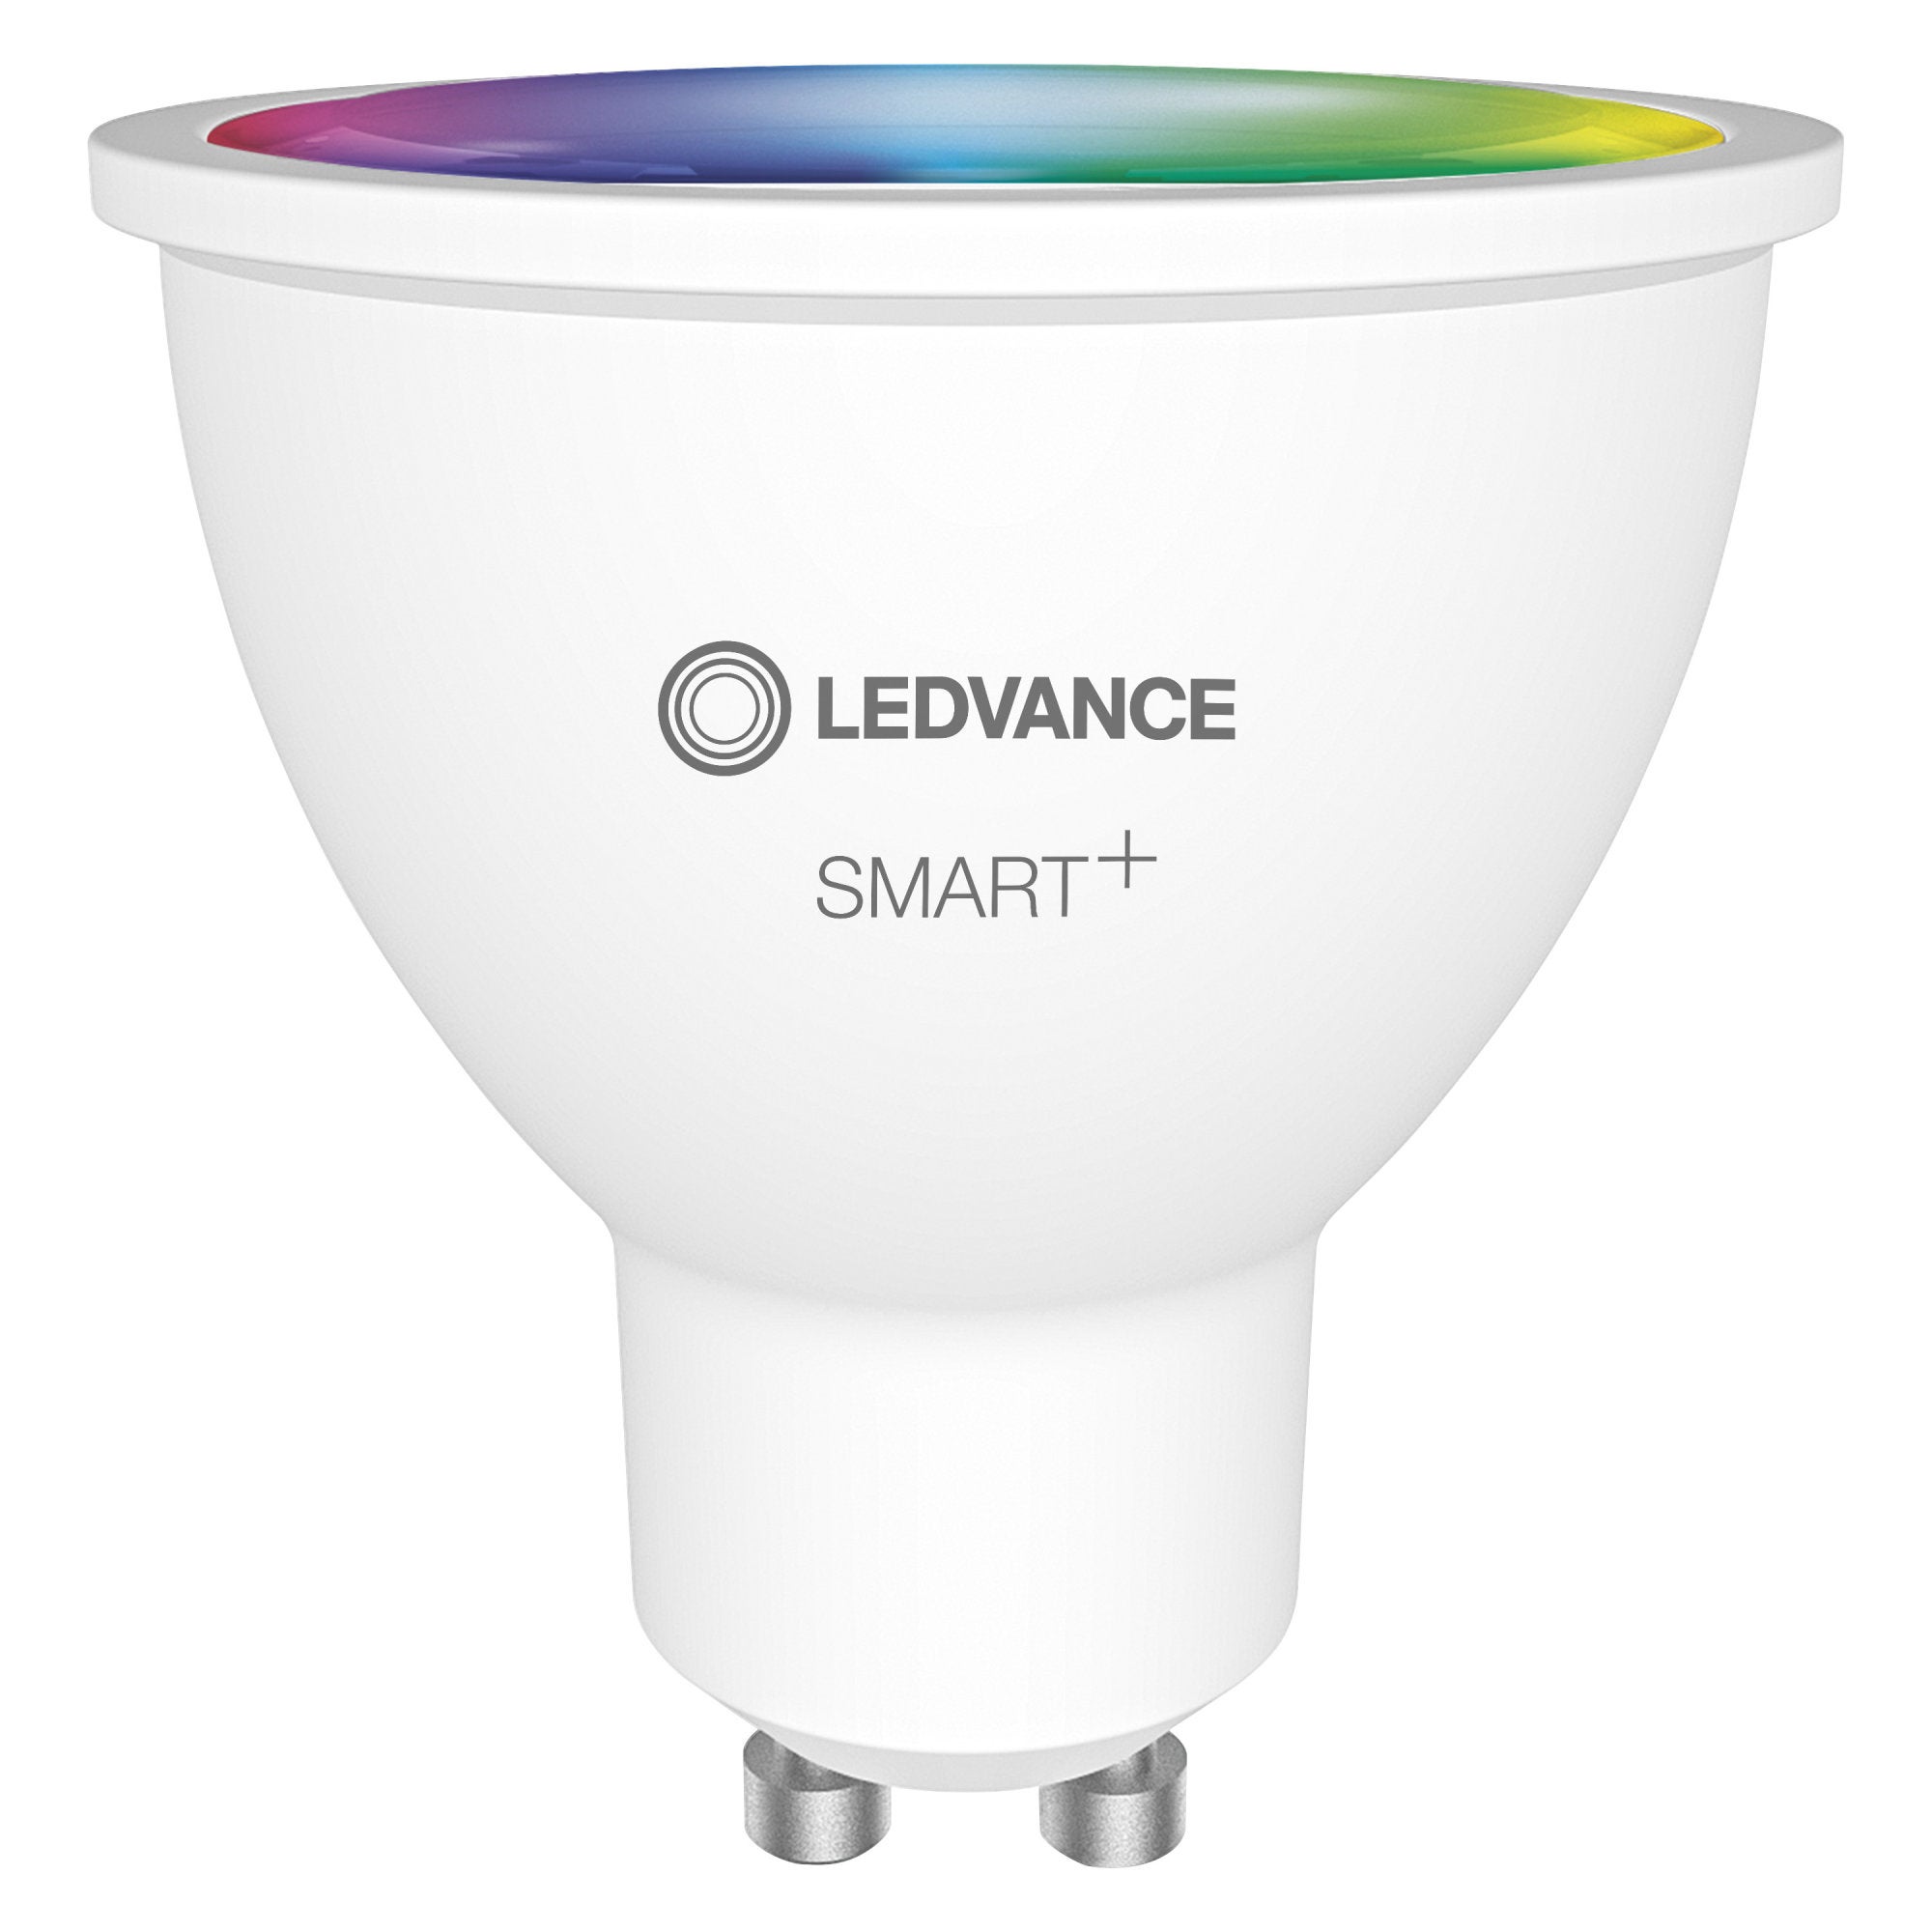 LEDVANCE Lampe LED RVB intelligente avec technologie WiFi, douille E14